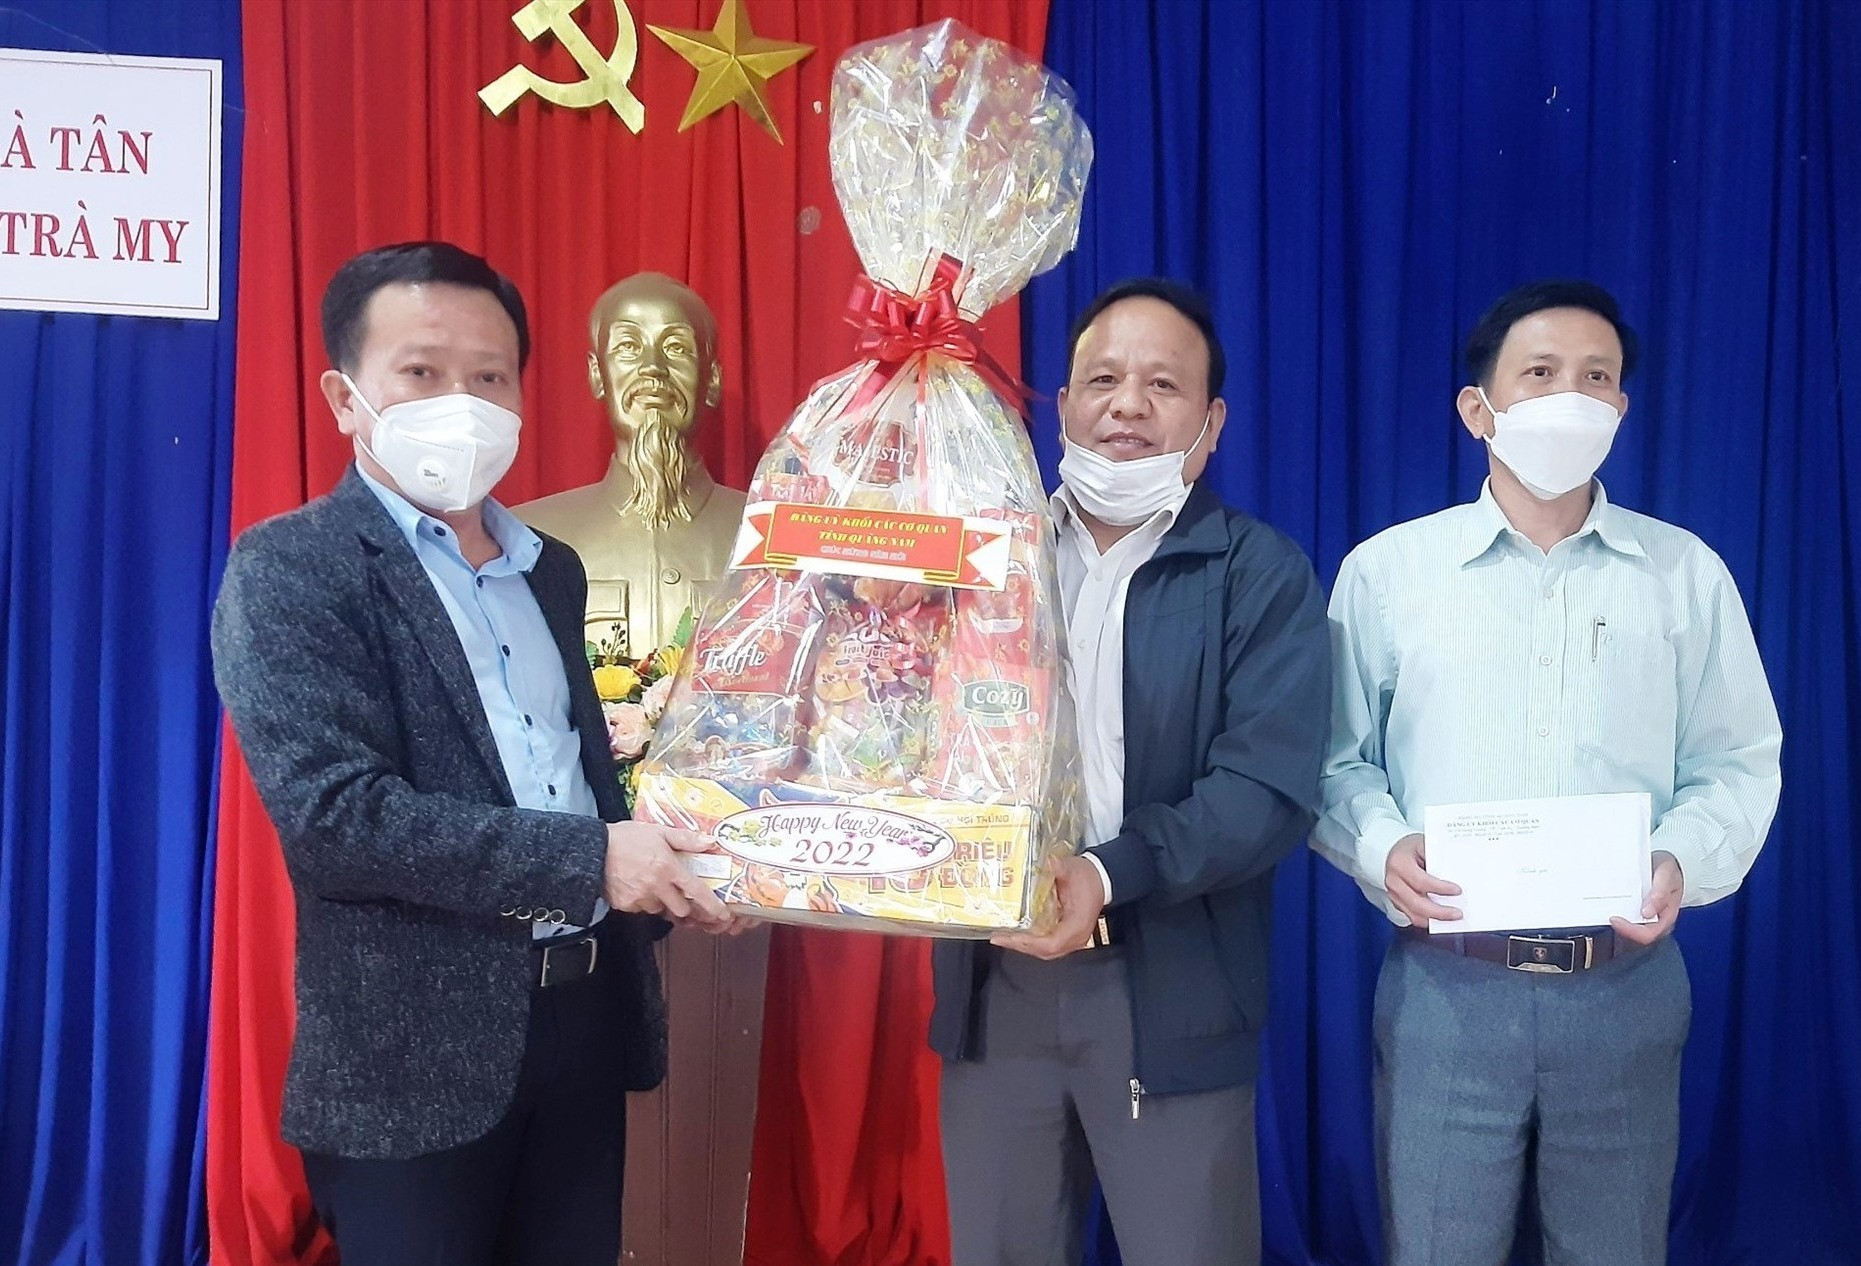 Ông Thái Bình - Bí thư Đảng ủy Khối các cơ quan tỉnh trao quà cho lãnh đạo xã Trà Tân. Ảnh: A.Đ